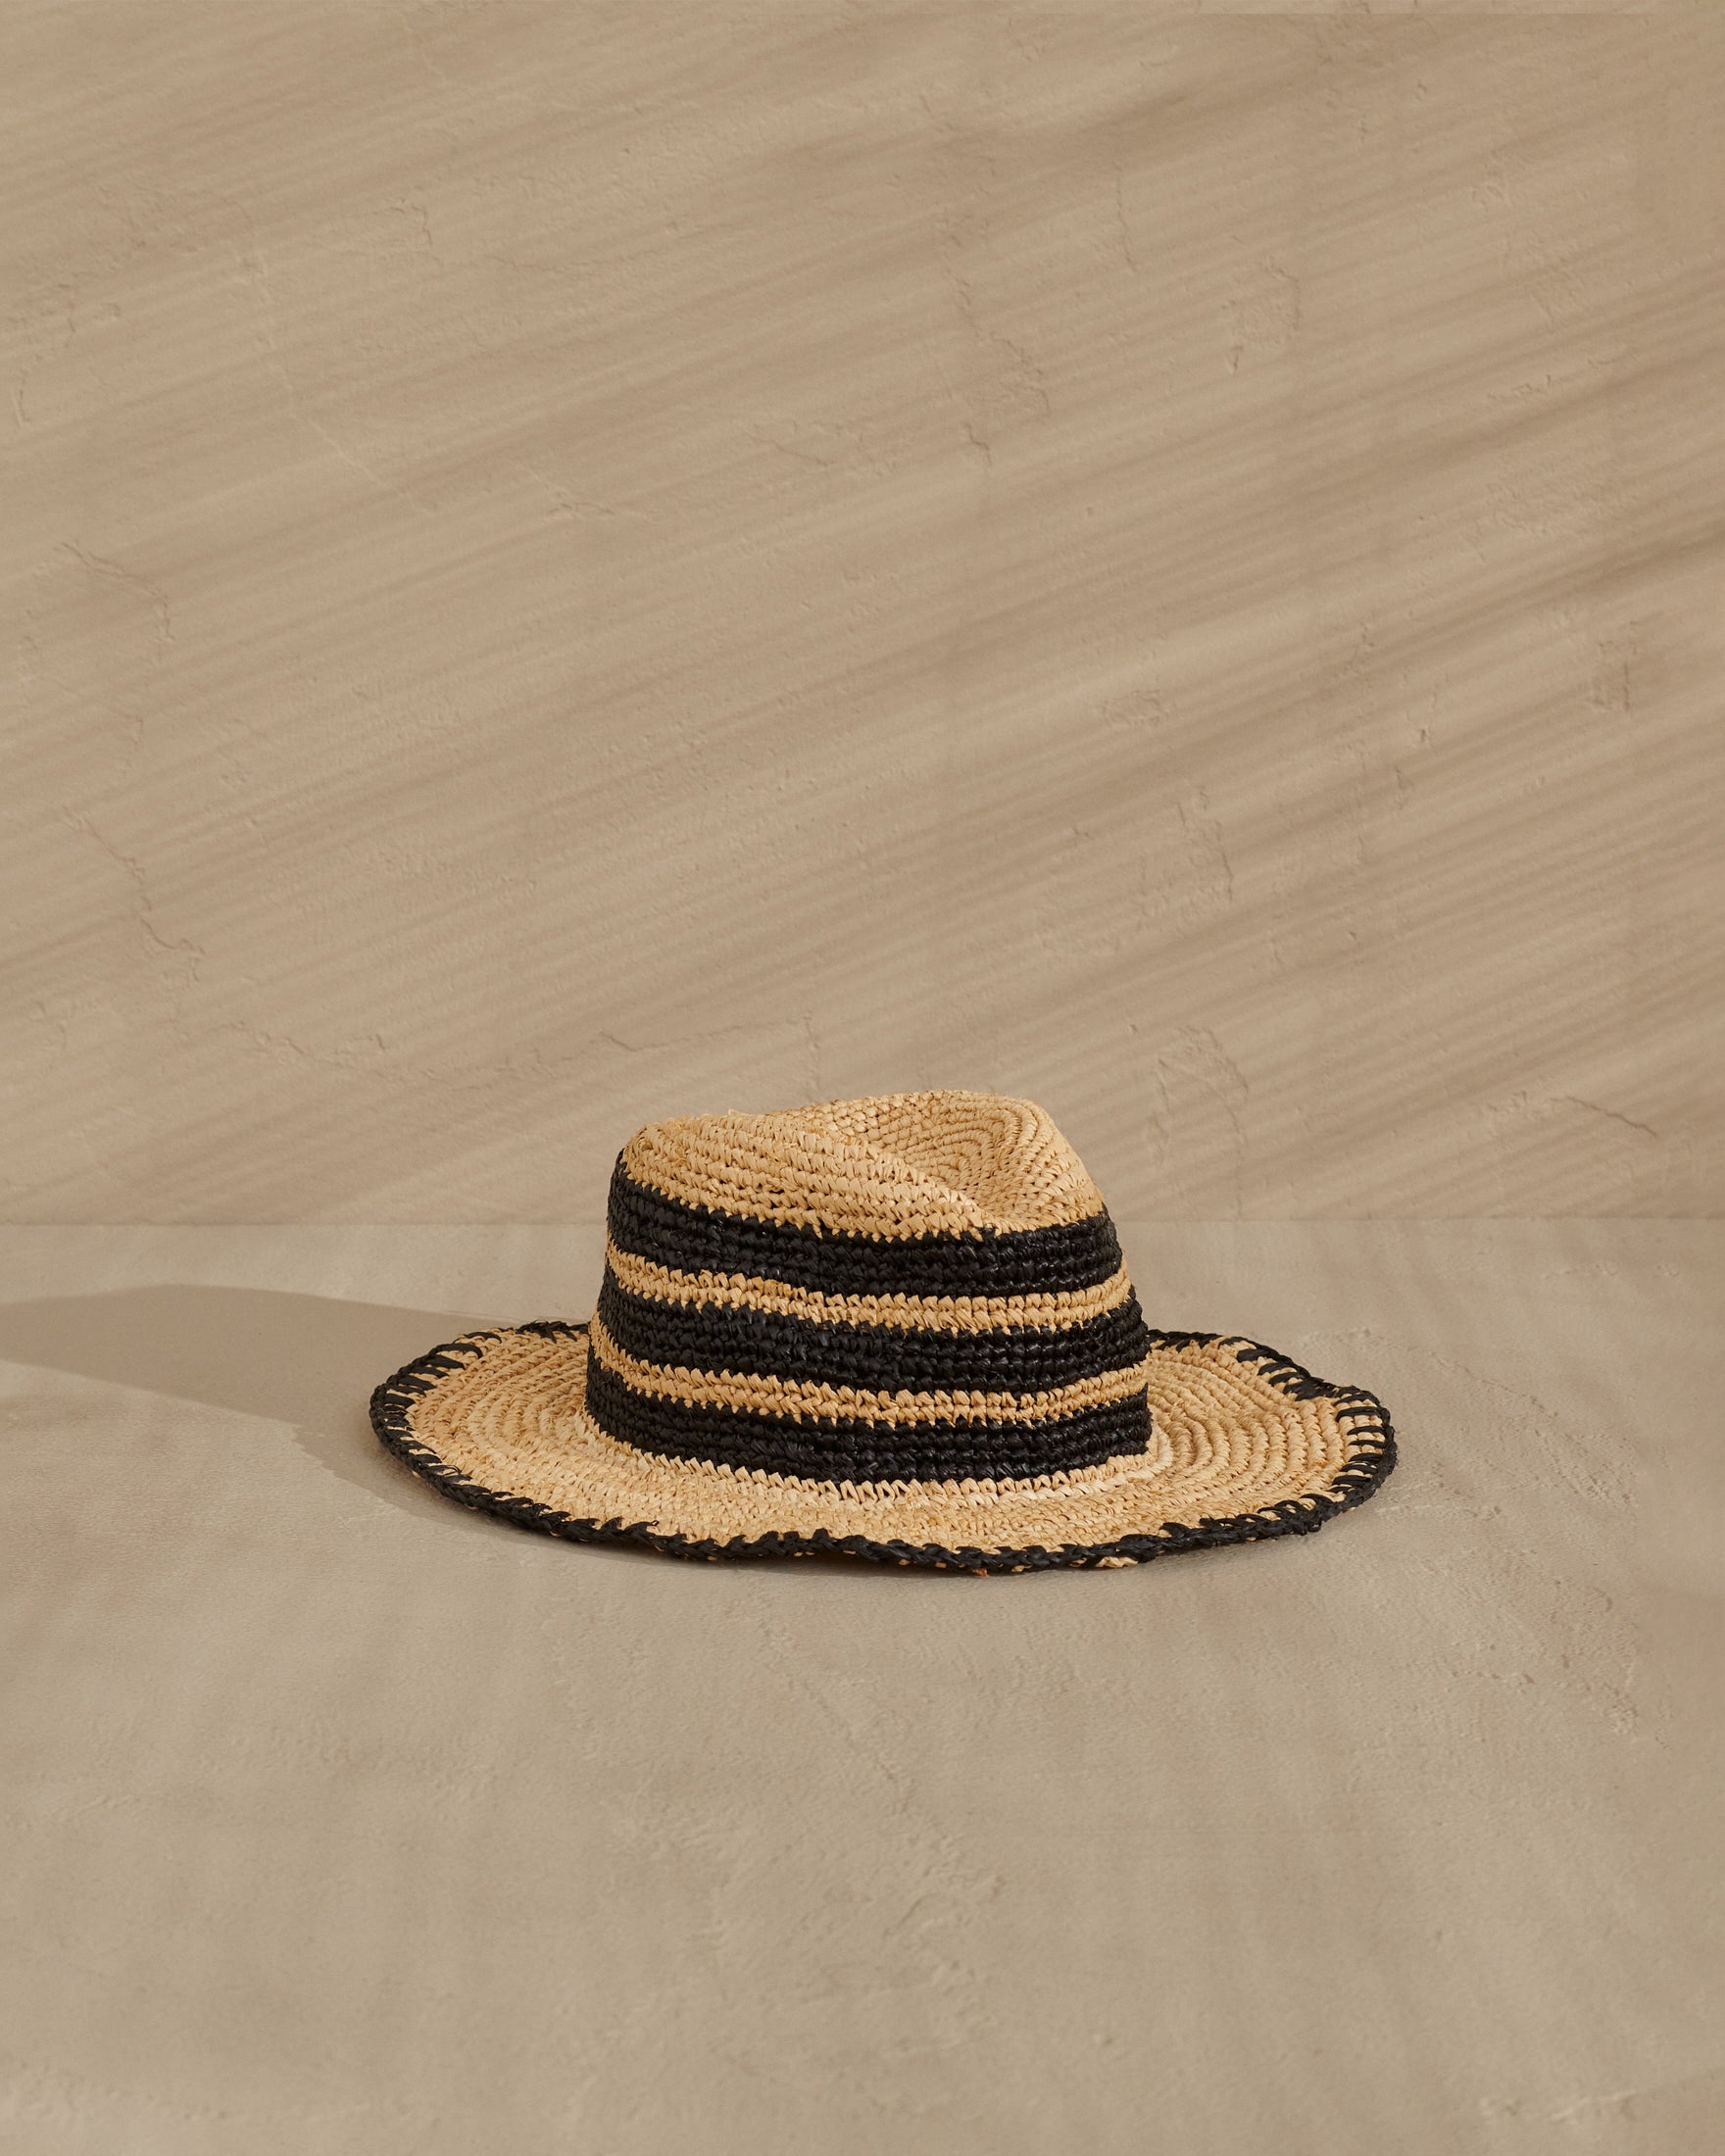 Raffia Panama Hat - Striped - Black And Tan